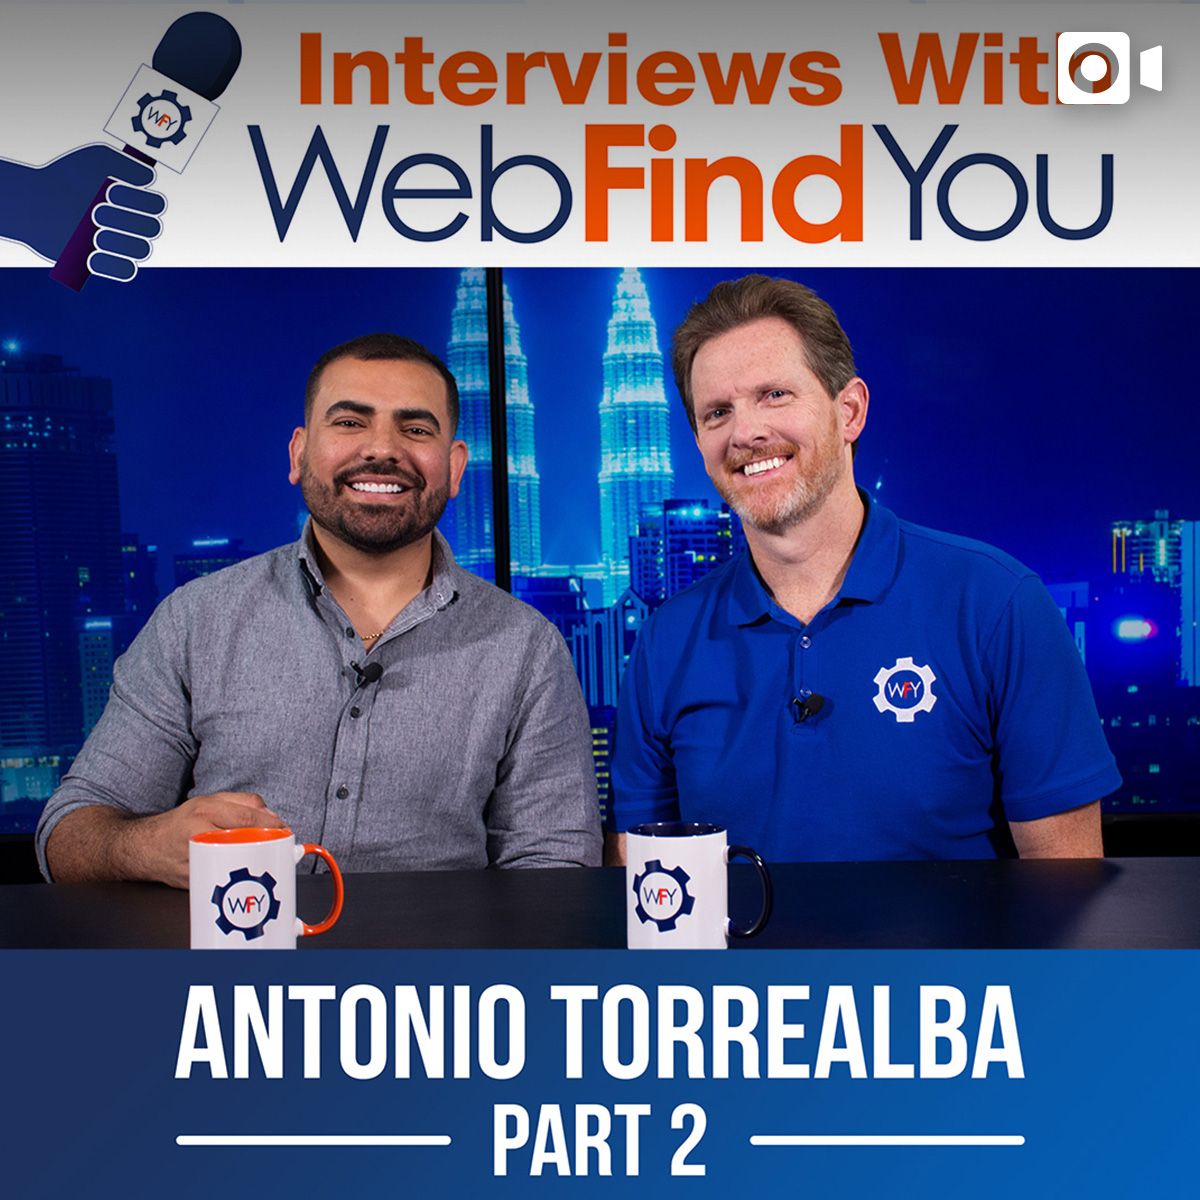 Antonio Torrealba's Interview Part 2